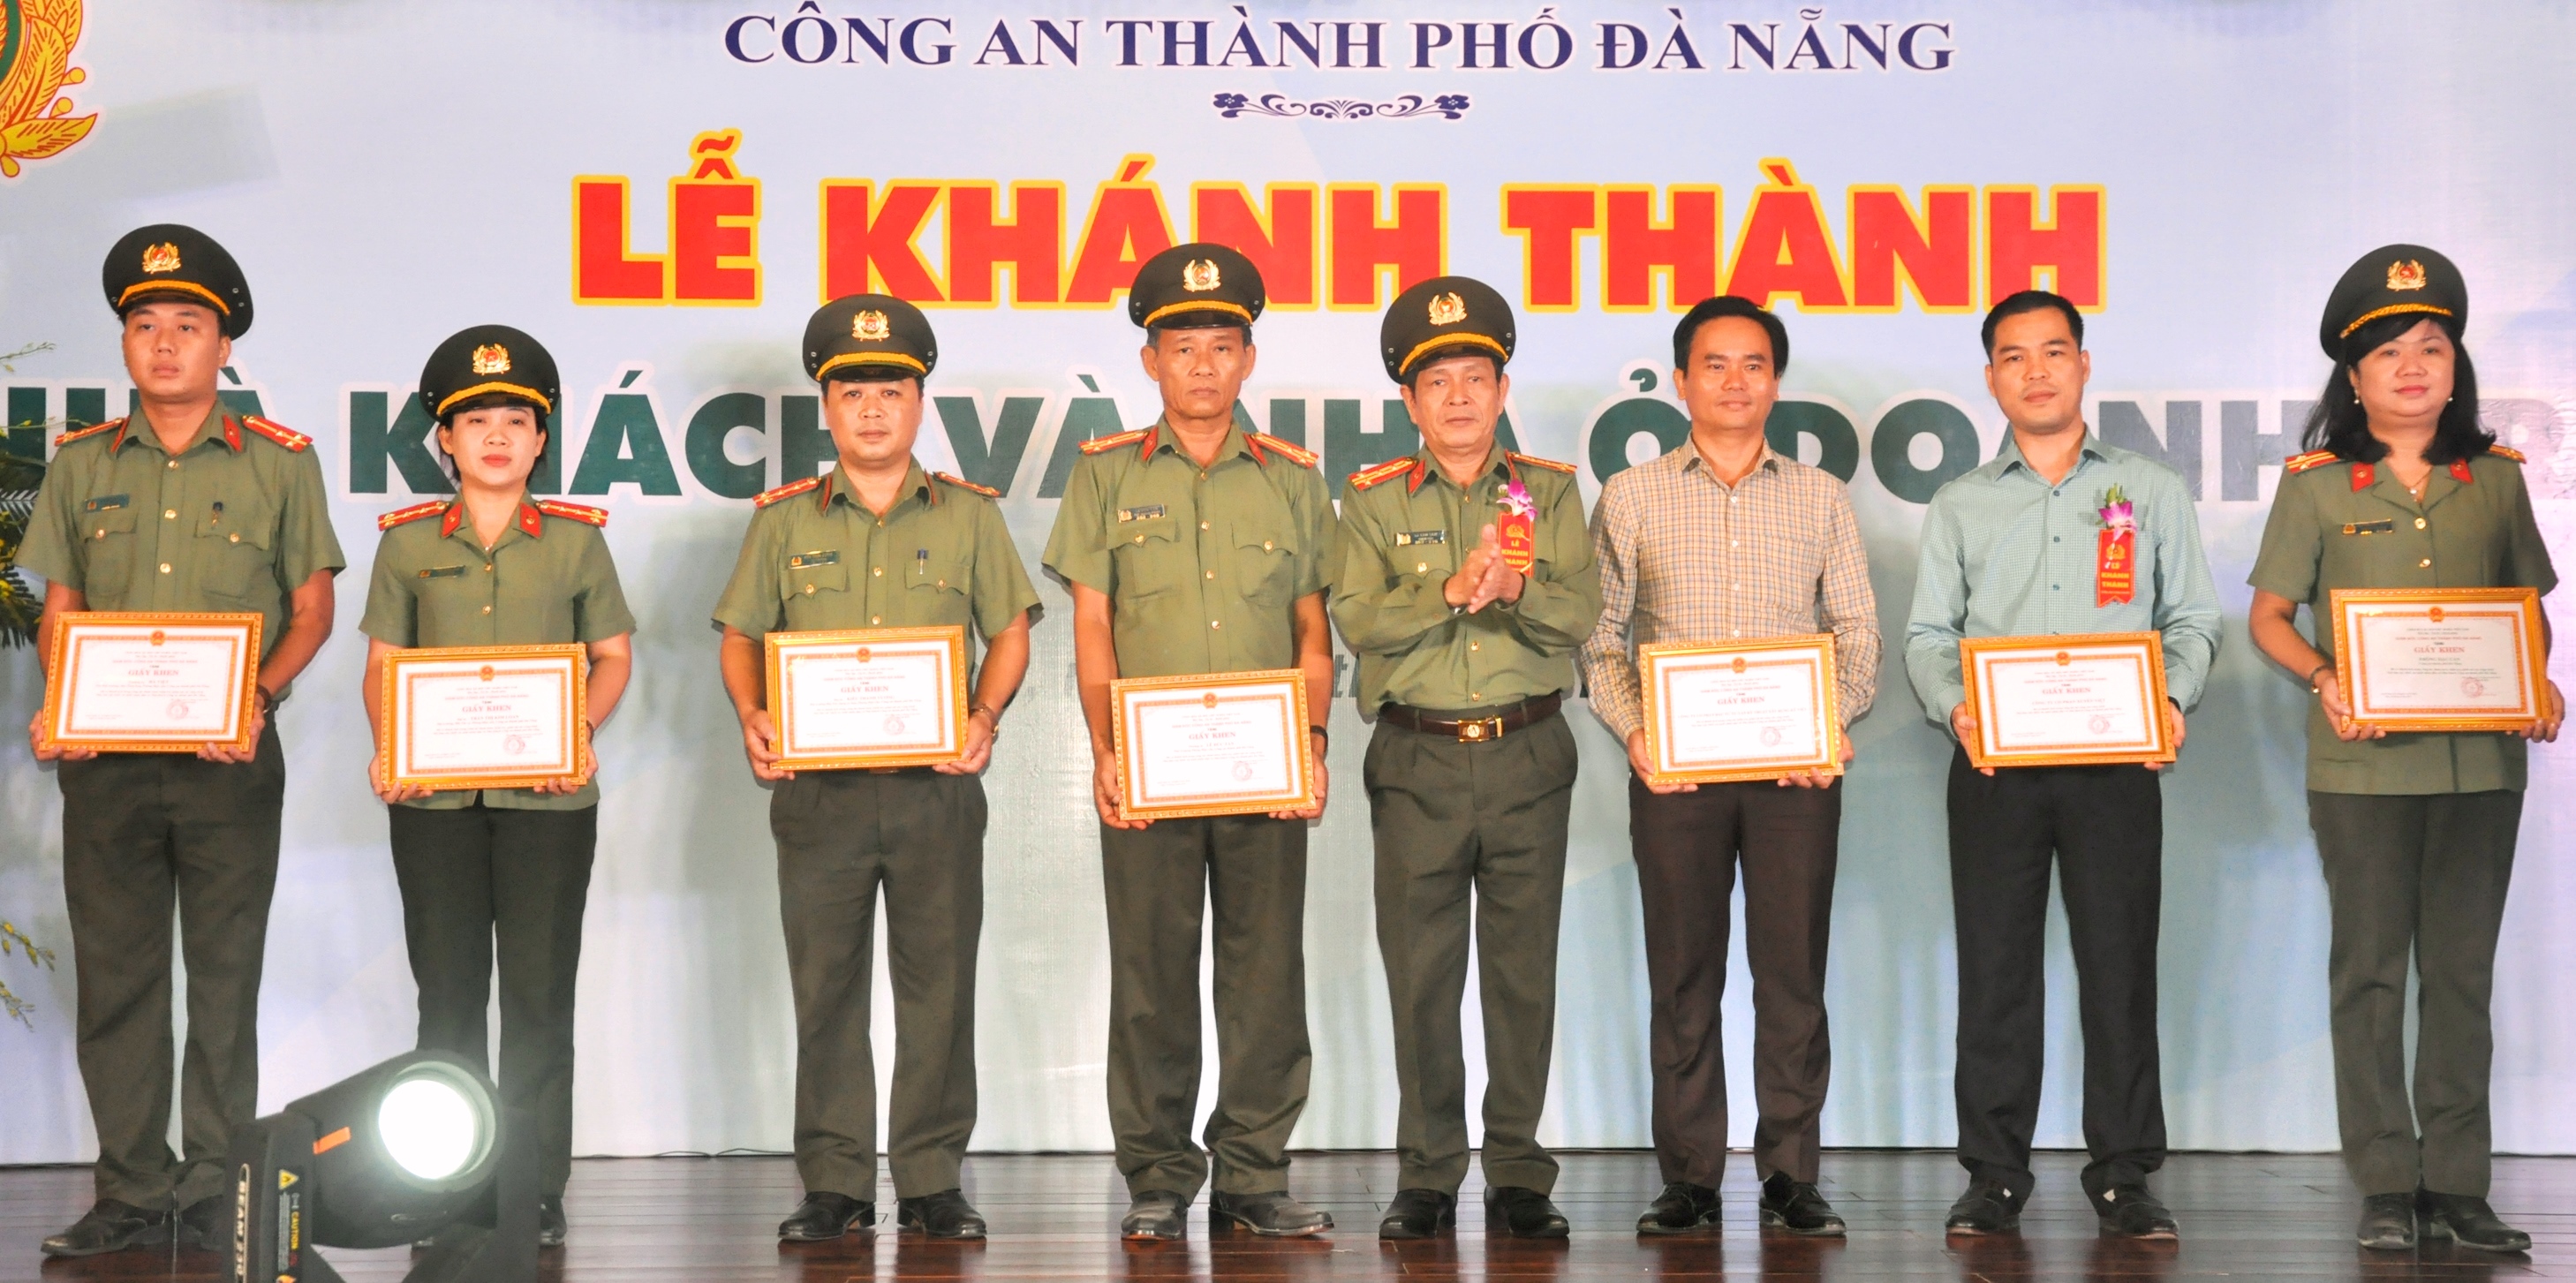 Đà Nẵng: Thiếu tướng Vũ Xuân Viên làm Giám đốc Công an thành phố - Hình 3